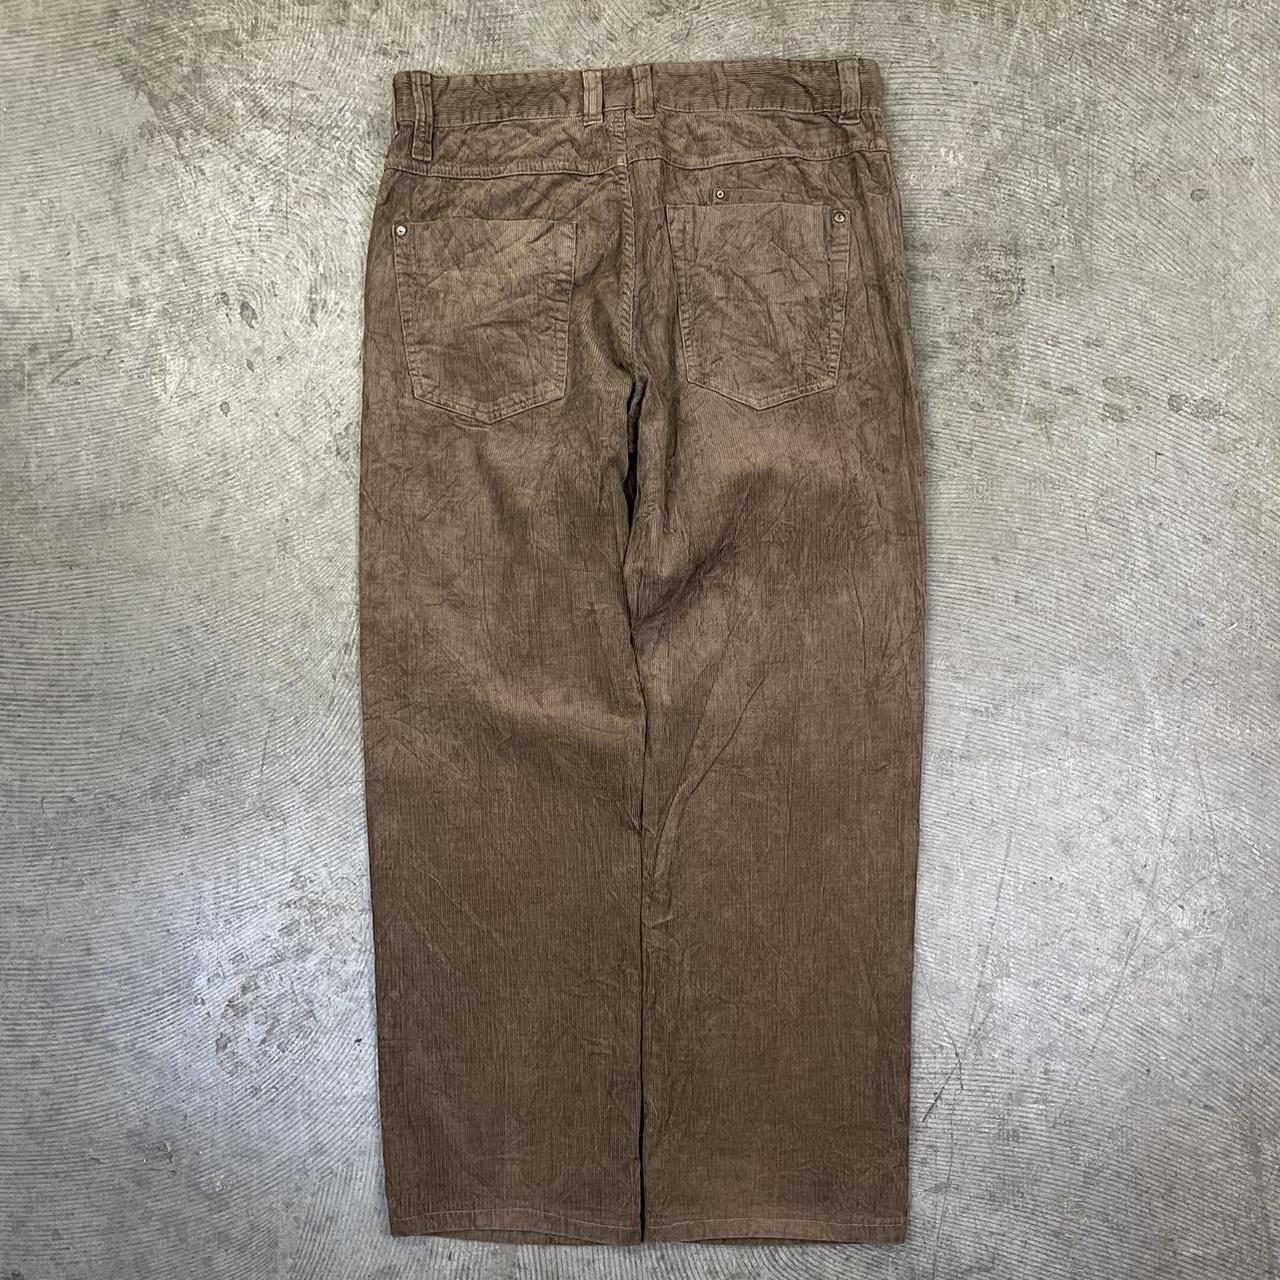 Vintage brown baggy cord pants 90s super jumbo... - Depop